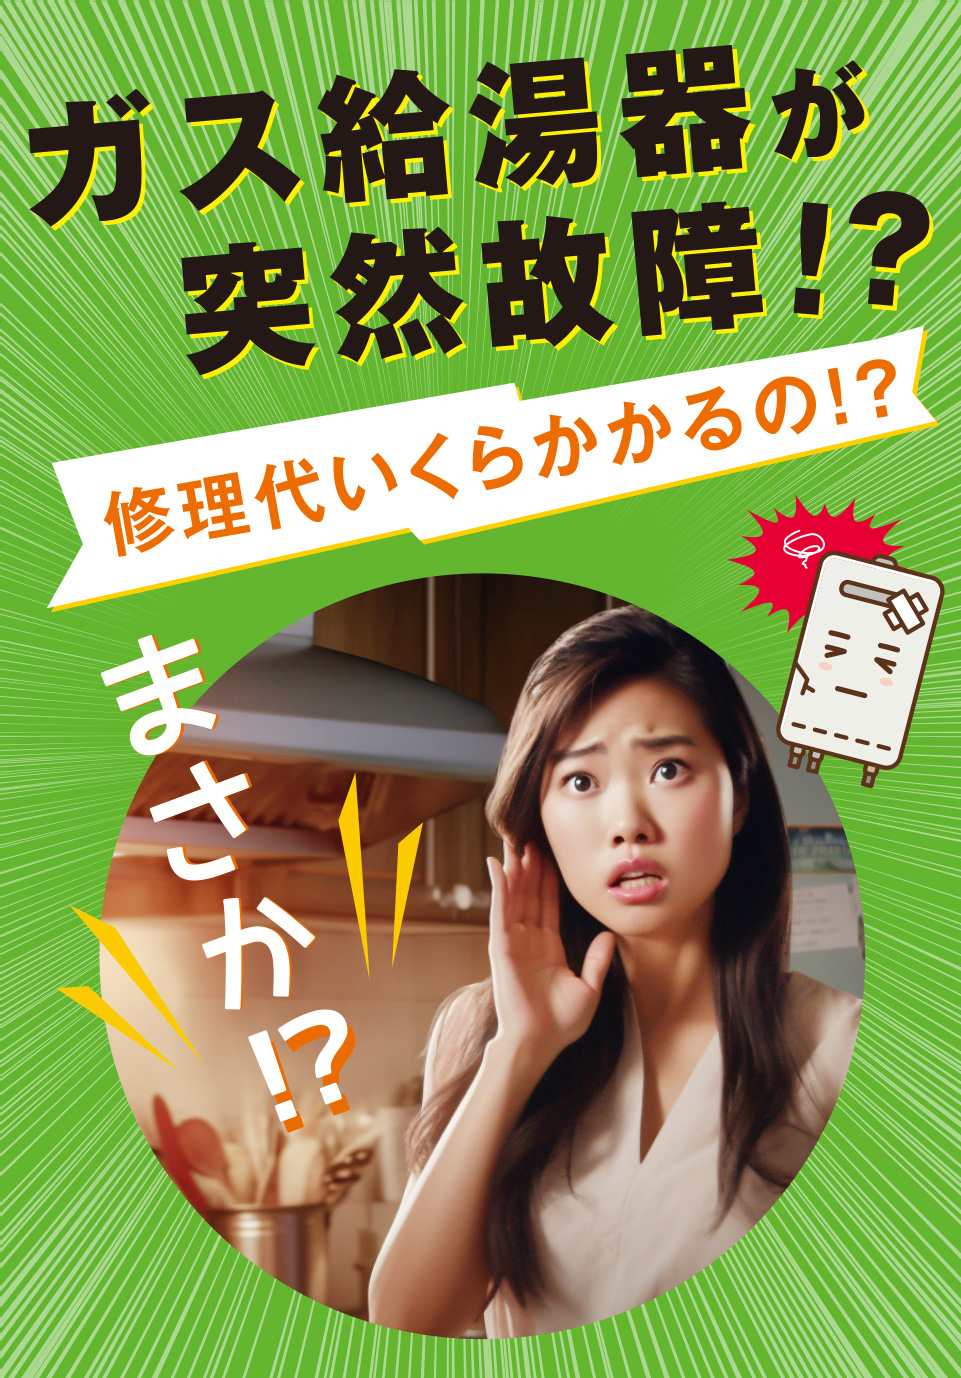 神奈川県横浜市 西区の皆さま！ガス給湯器の故障でお困りですか？